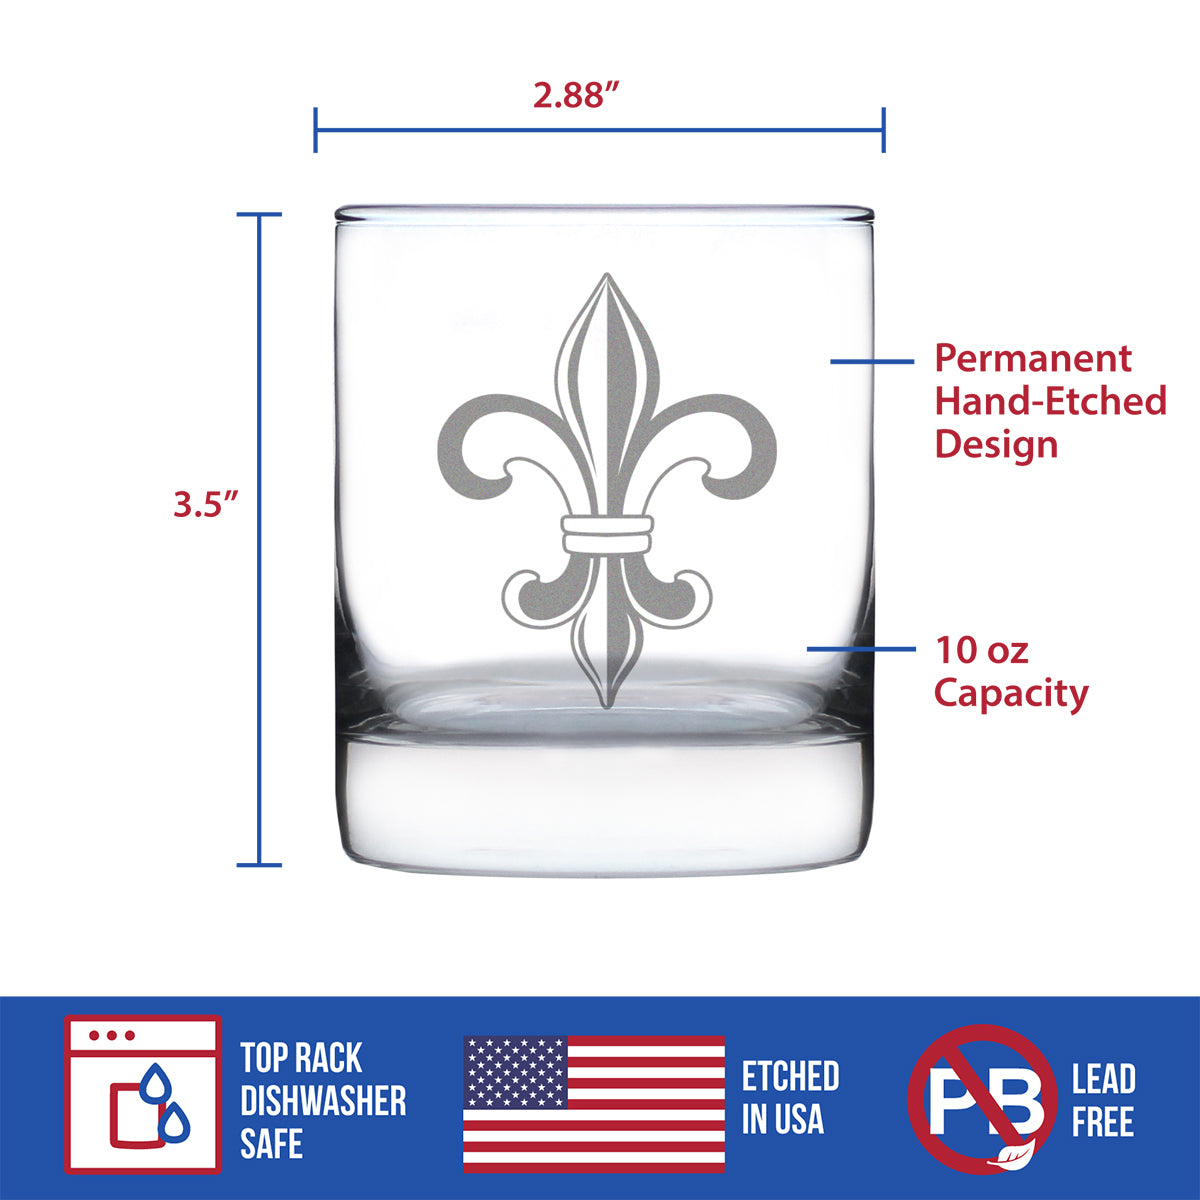 Fleur de Lis Rocks Glass - French Fleur de Lis Decor and Gifts - 10.25 Oz Glasses